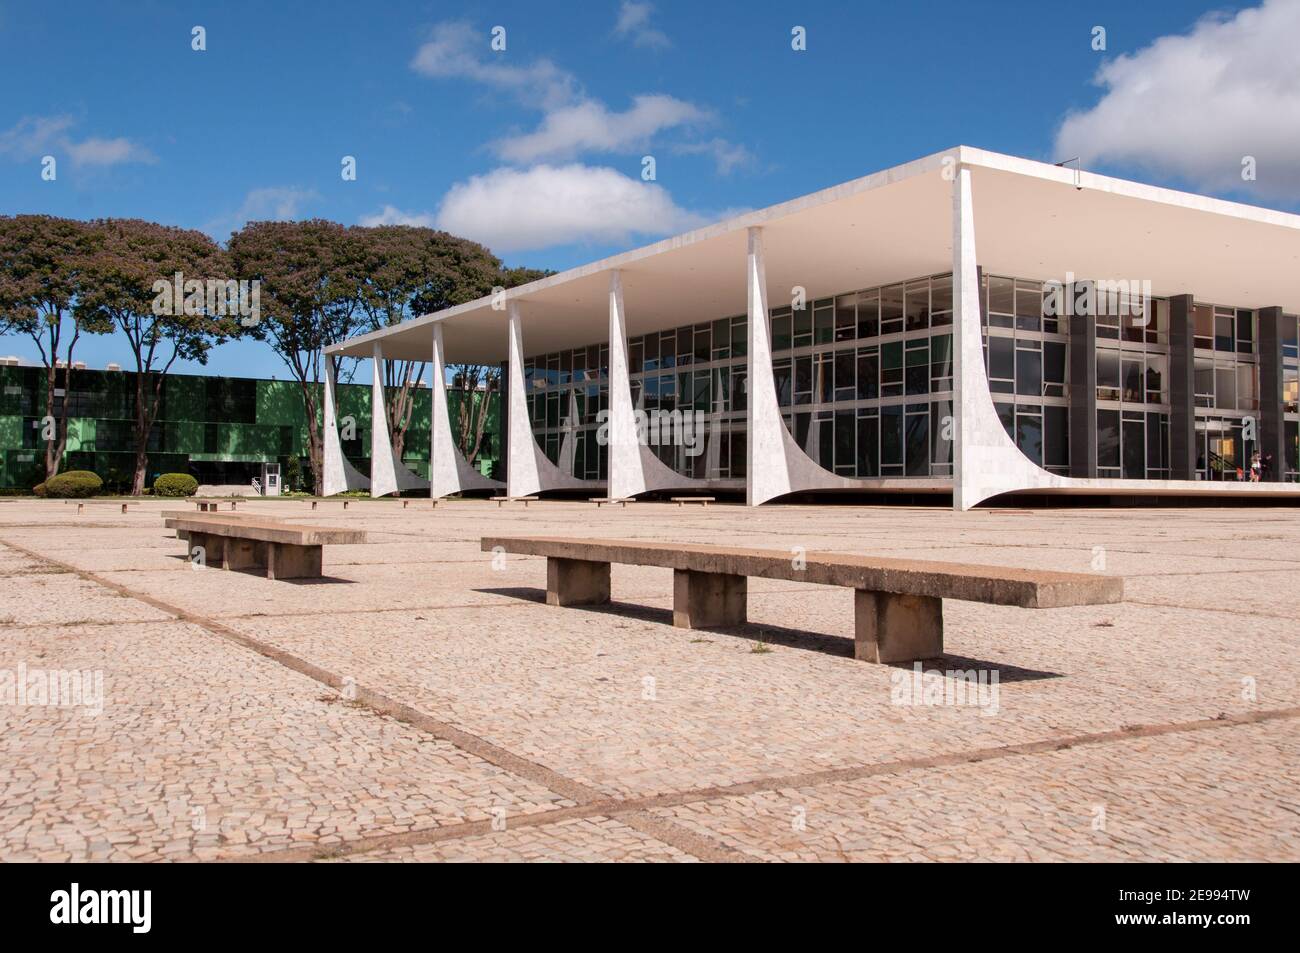 BRASILIA, BRASILE - 7 GIUGNO 2015: Tribunale Federale Supremo presso la piazza delle tre potenze situata nella capitale del Brasile. Foto Stock